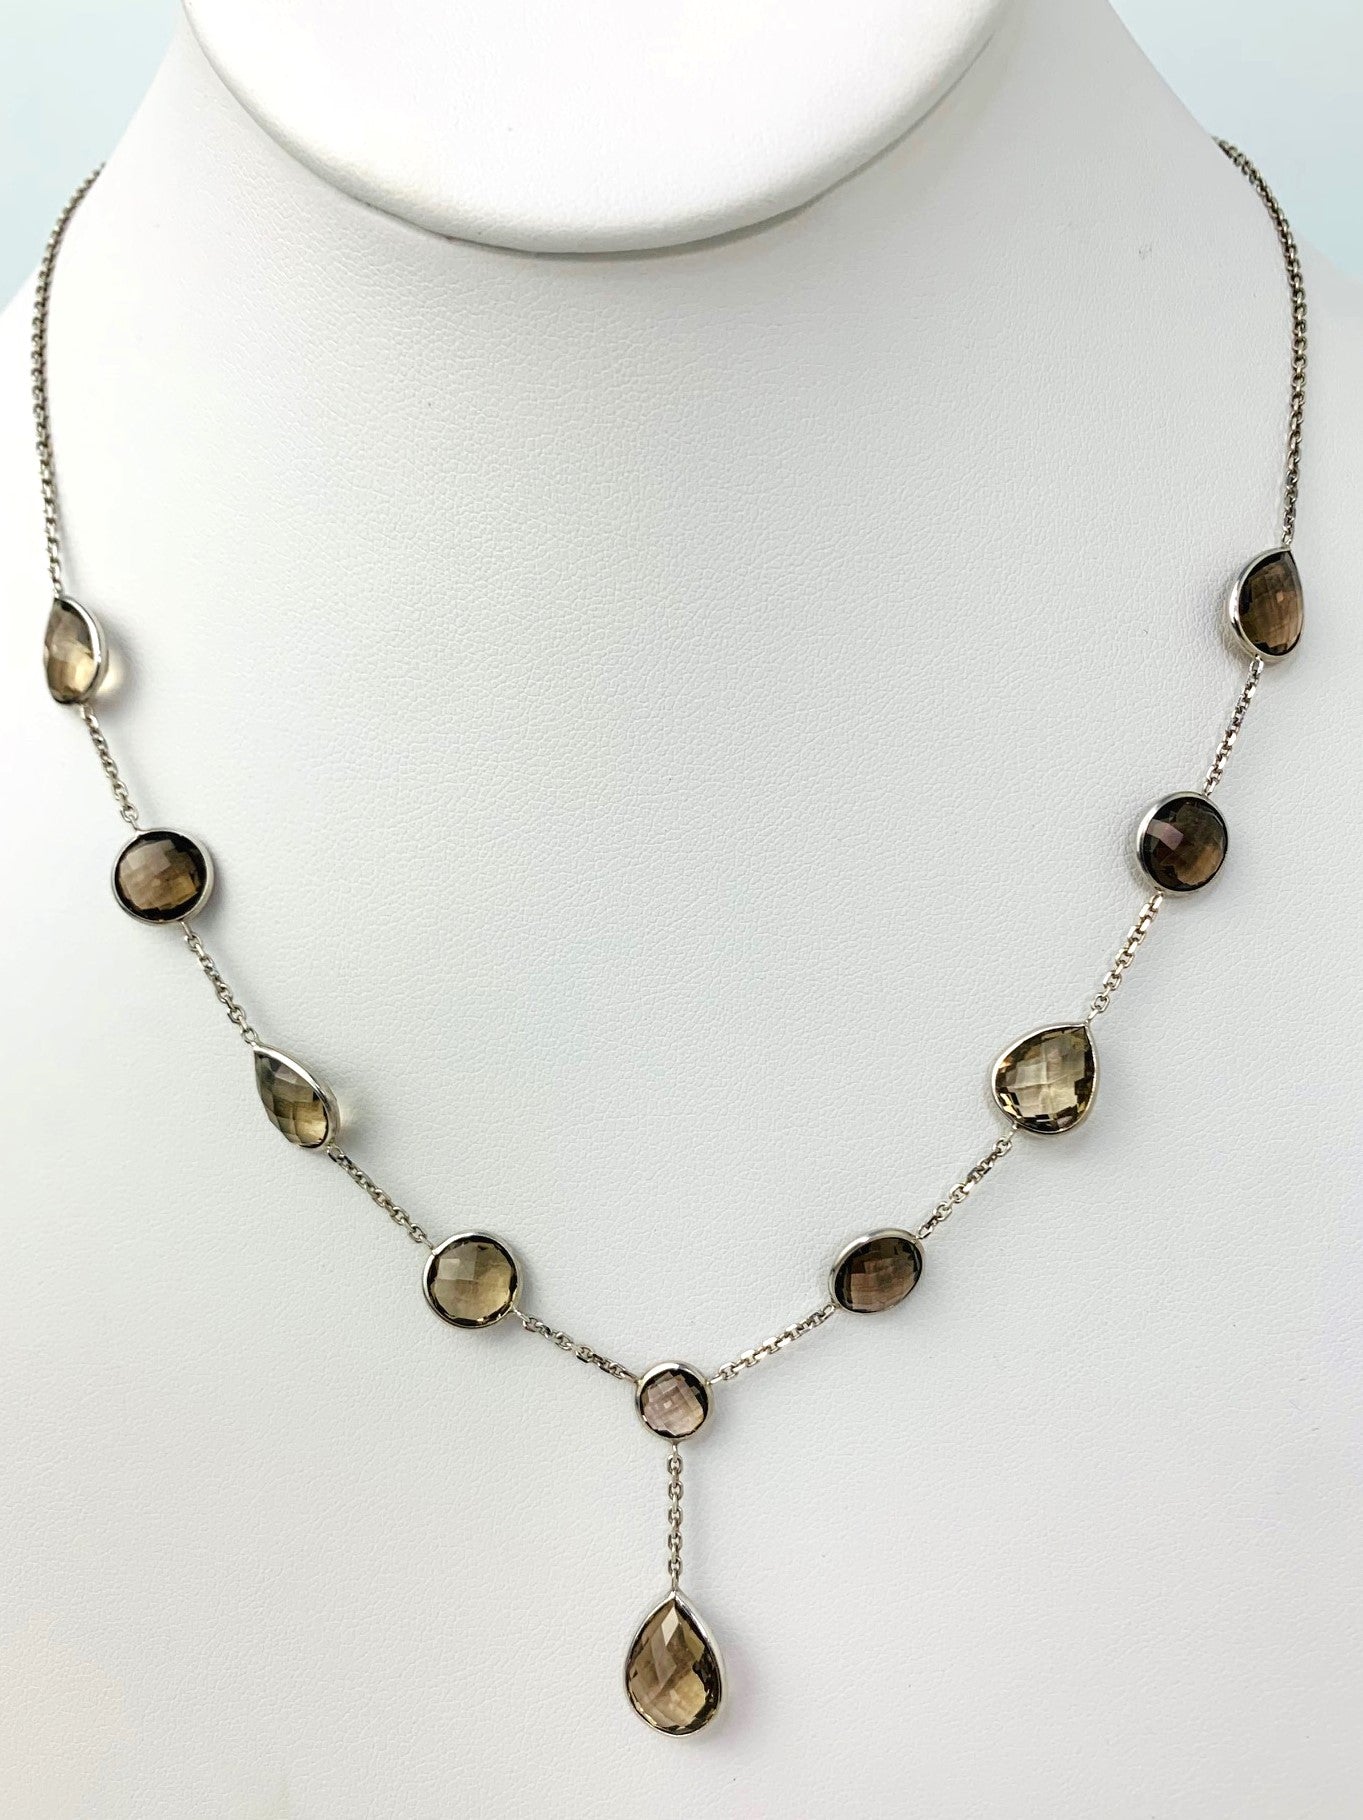 18" Smokey Quartz Lariat Bezel Necklace With Pear Drop in 14KW - NCK-323-BZGM14W-SQ-18